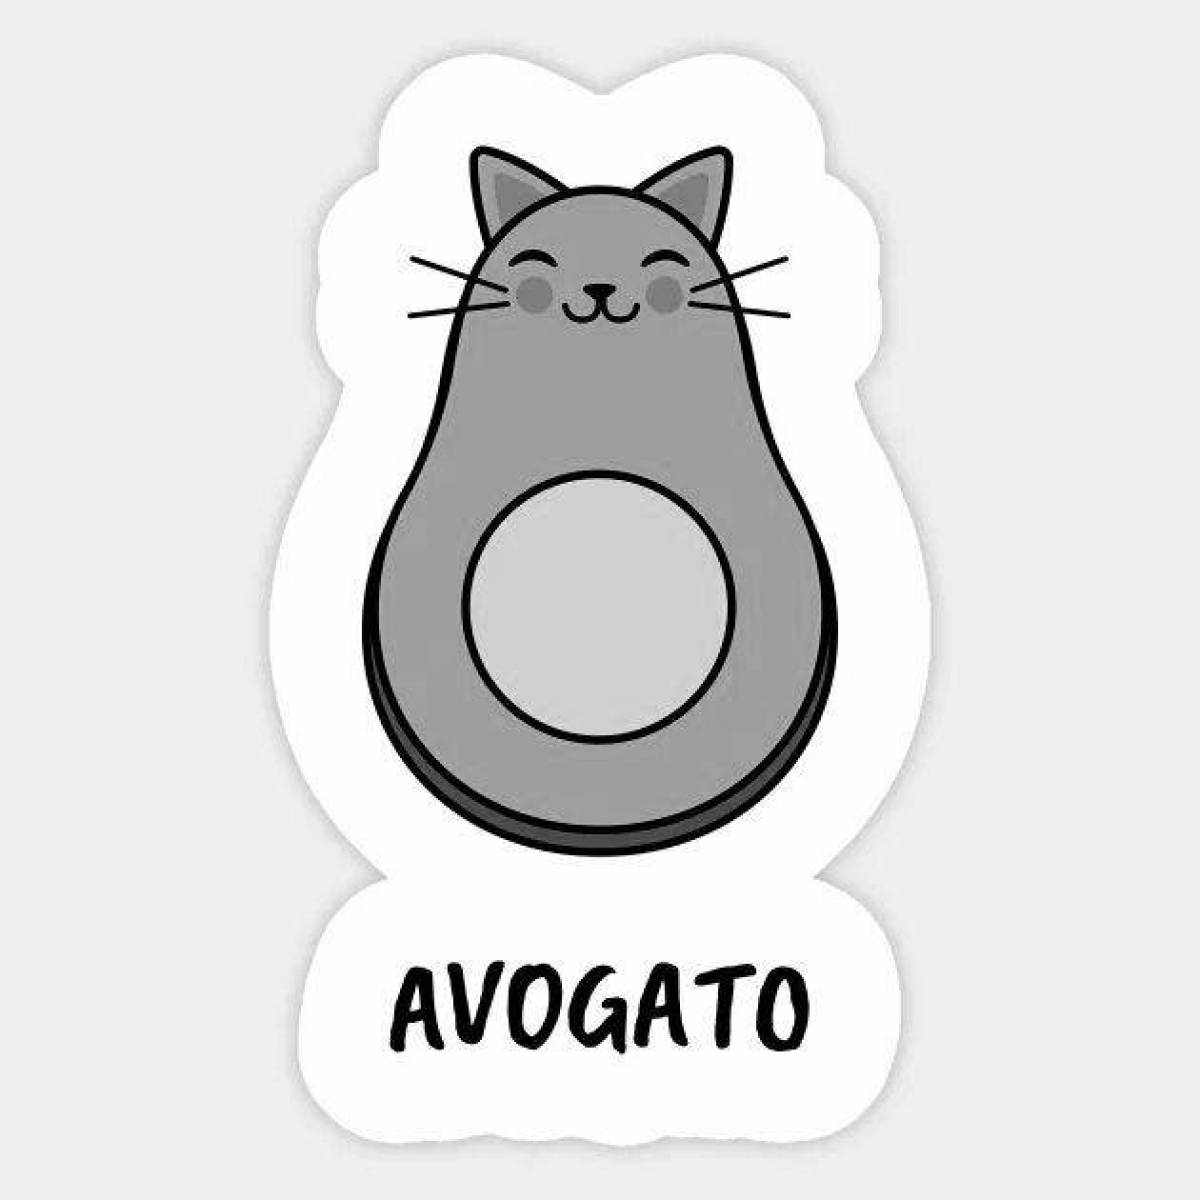 Adorable avocado cat coloring page